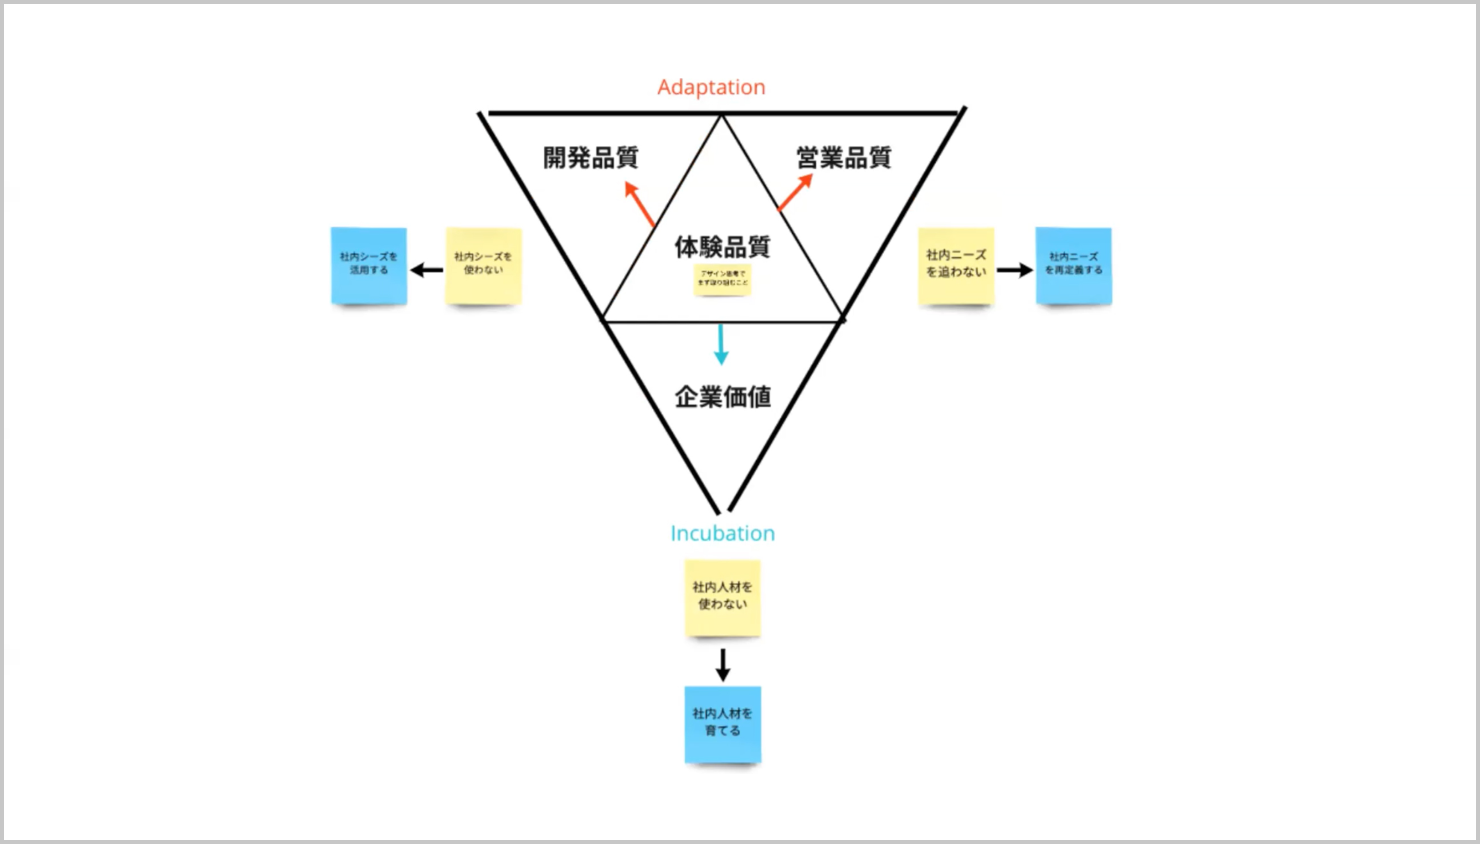 発表資料：「Tetra Force」の4つの要素を「Design Incubation」と「Design Adaptation」でどのように使うのか示した図。